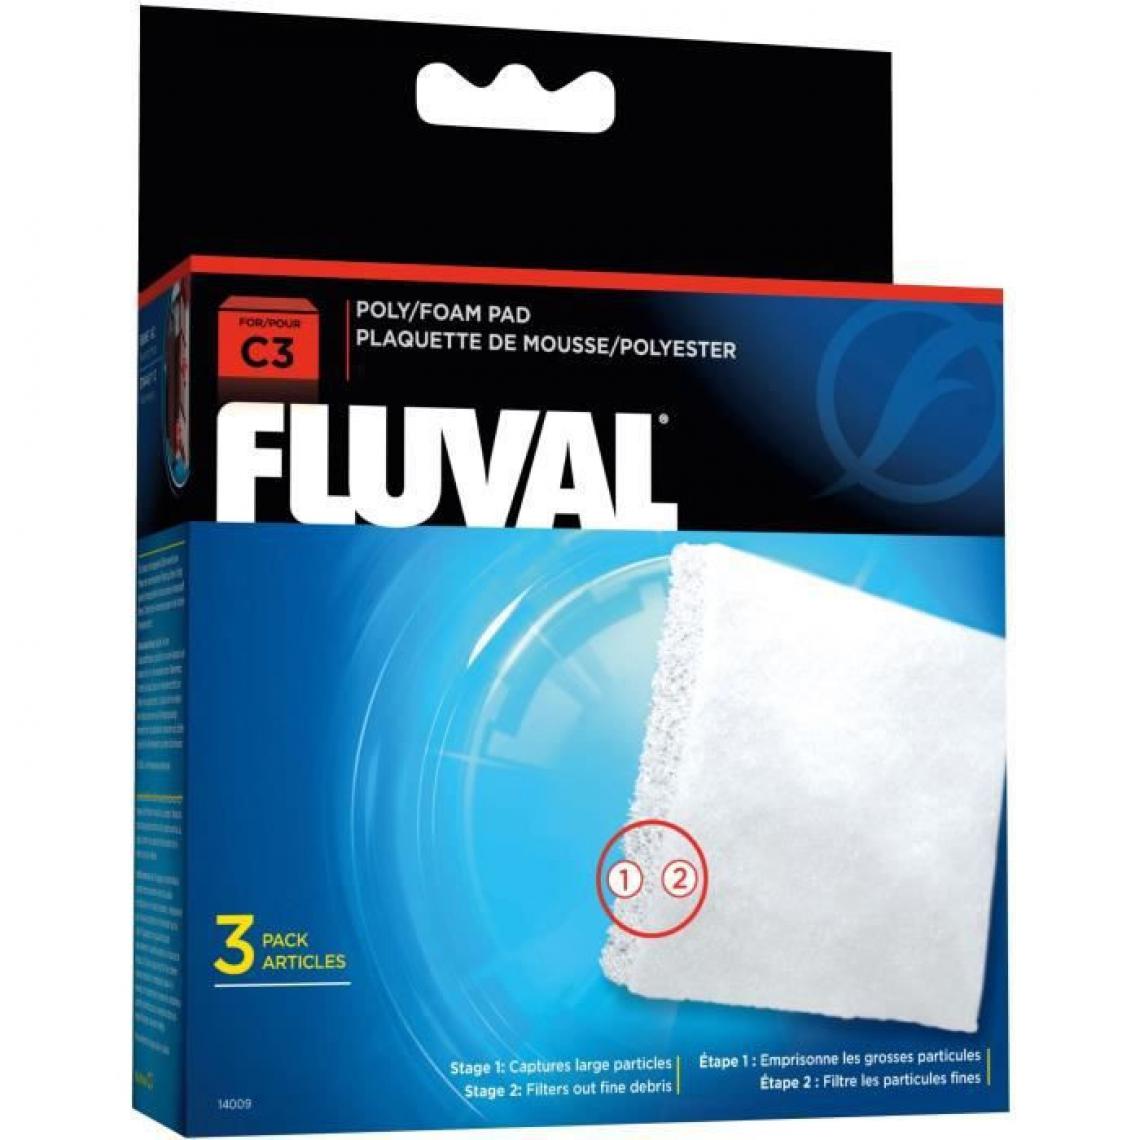 Fluval - FLUVAL Plaquette mousse/polyester C3,3unite - Pour poisson - Equipement de l'aquarium